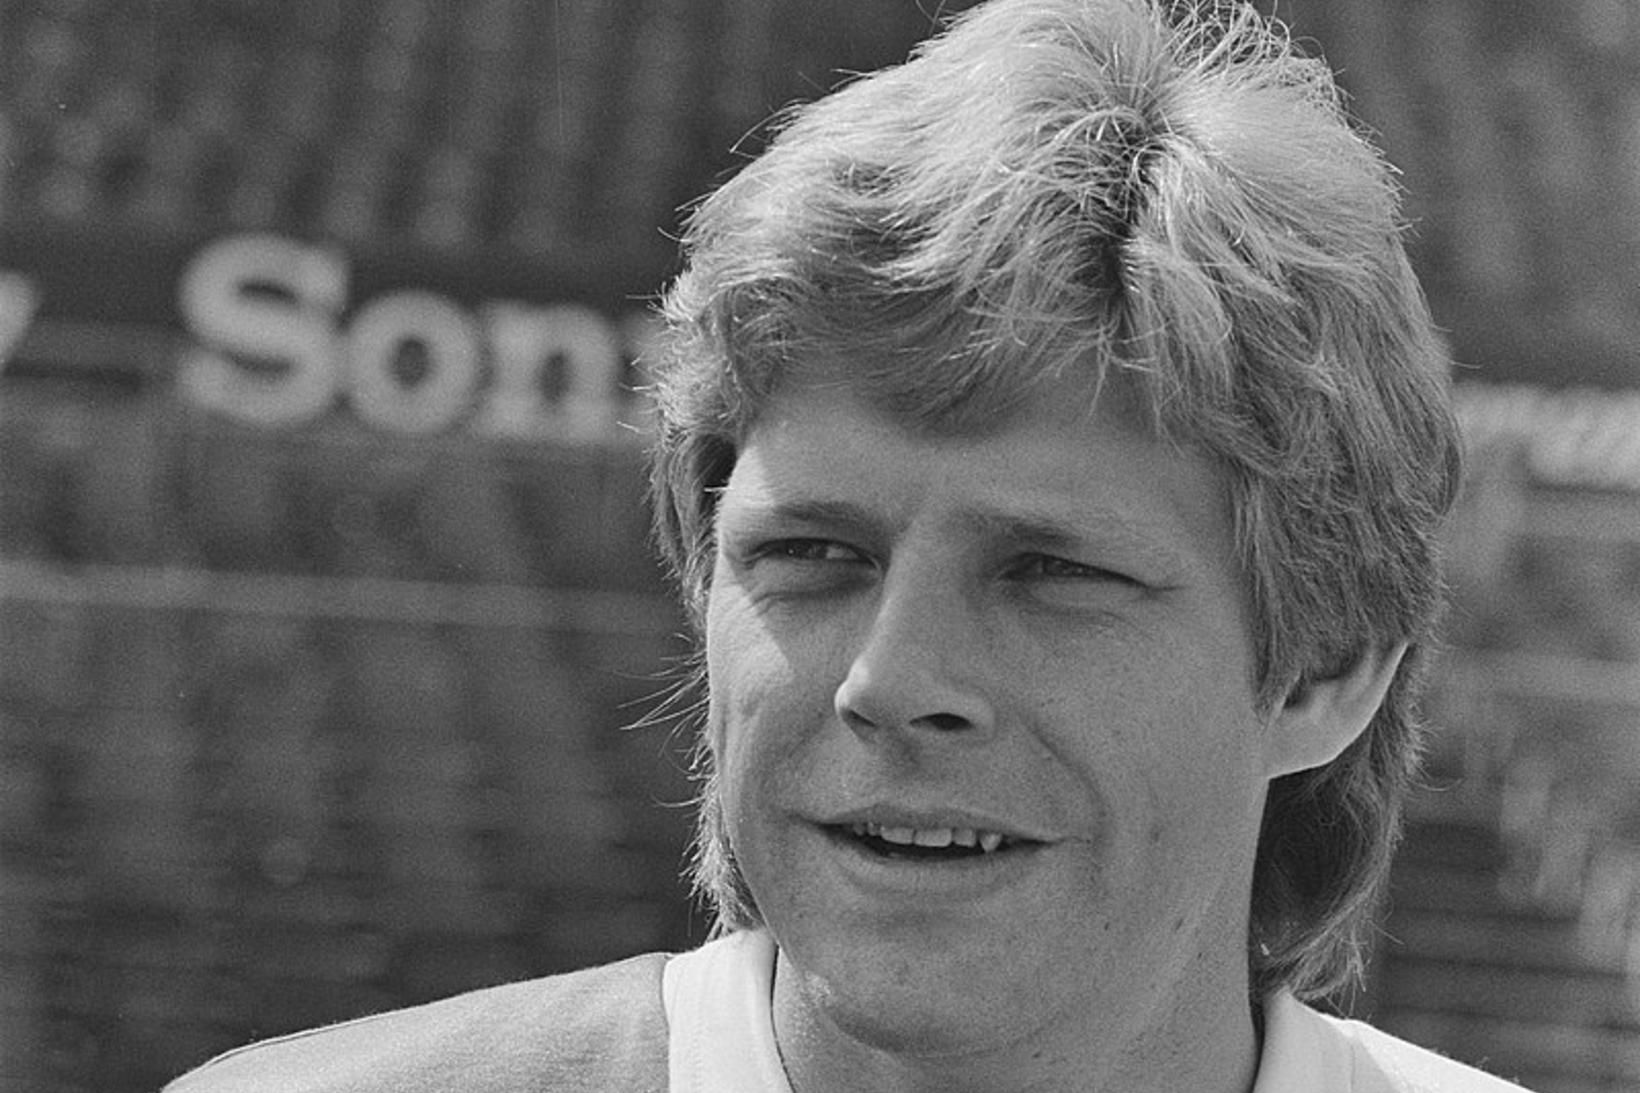 Jan Sörensen er hann lék með Feyenoord í Hollandi.